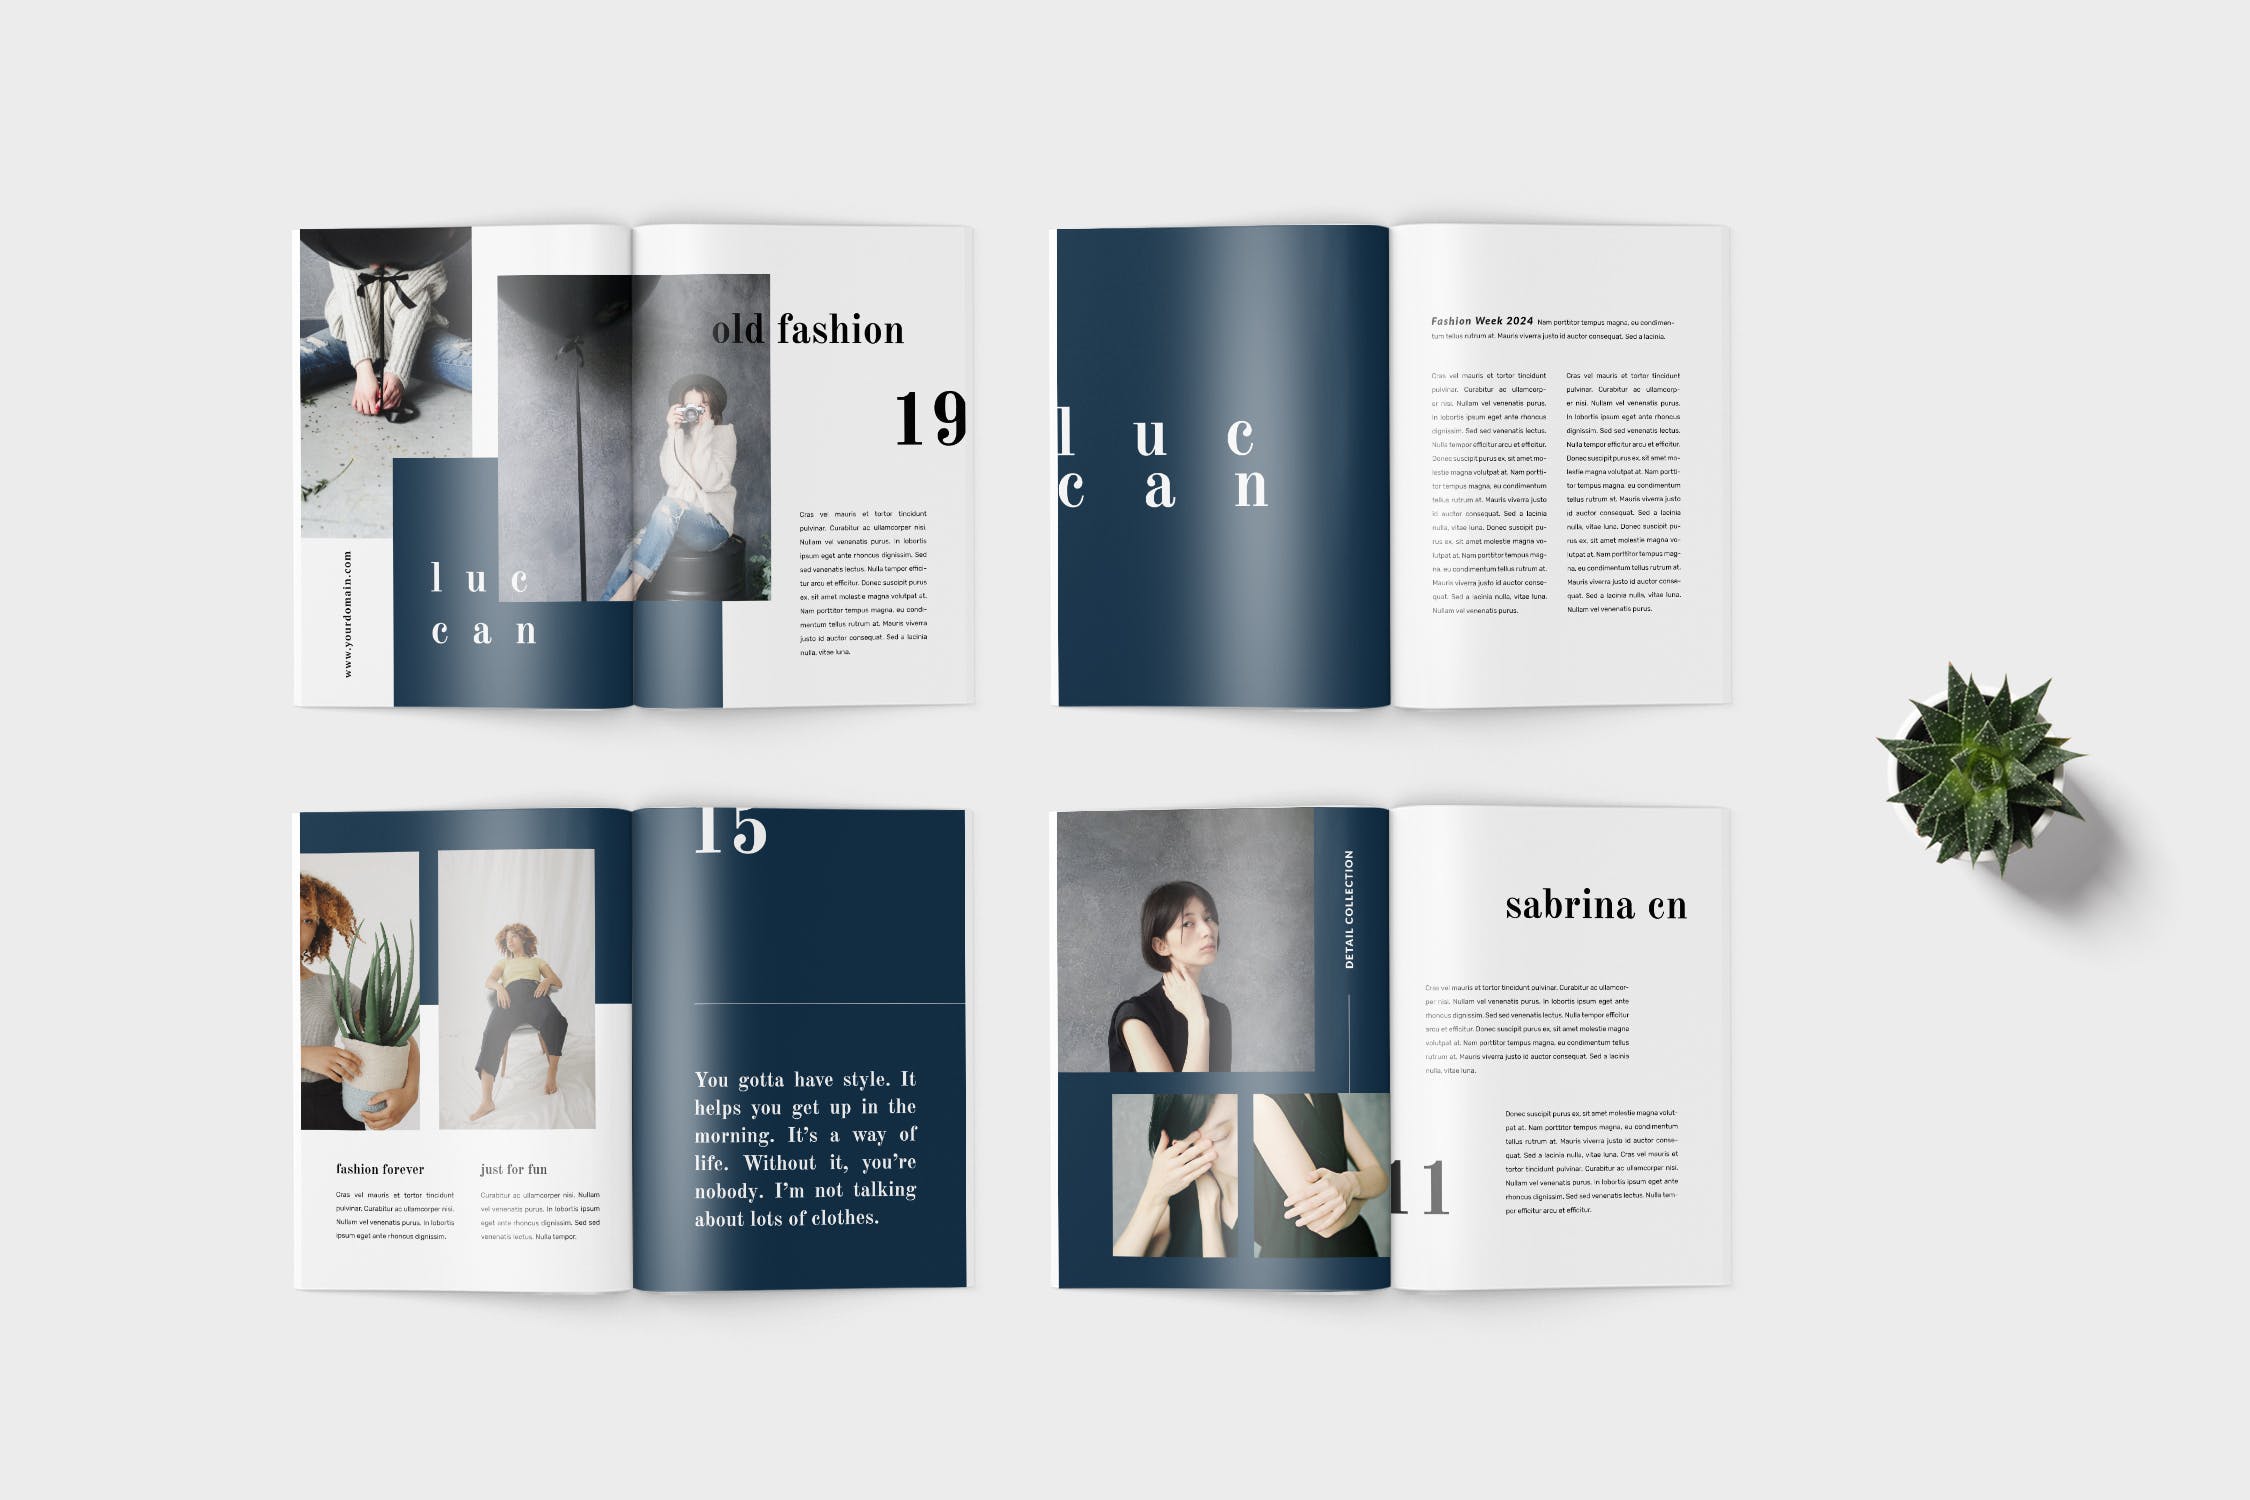 高端女性服装品牌产品第一素材精选目录设计模板 Luccan Fashion Lookbook Catalogue插图(3)